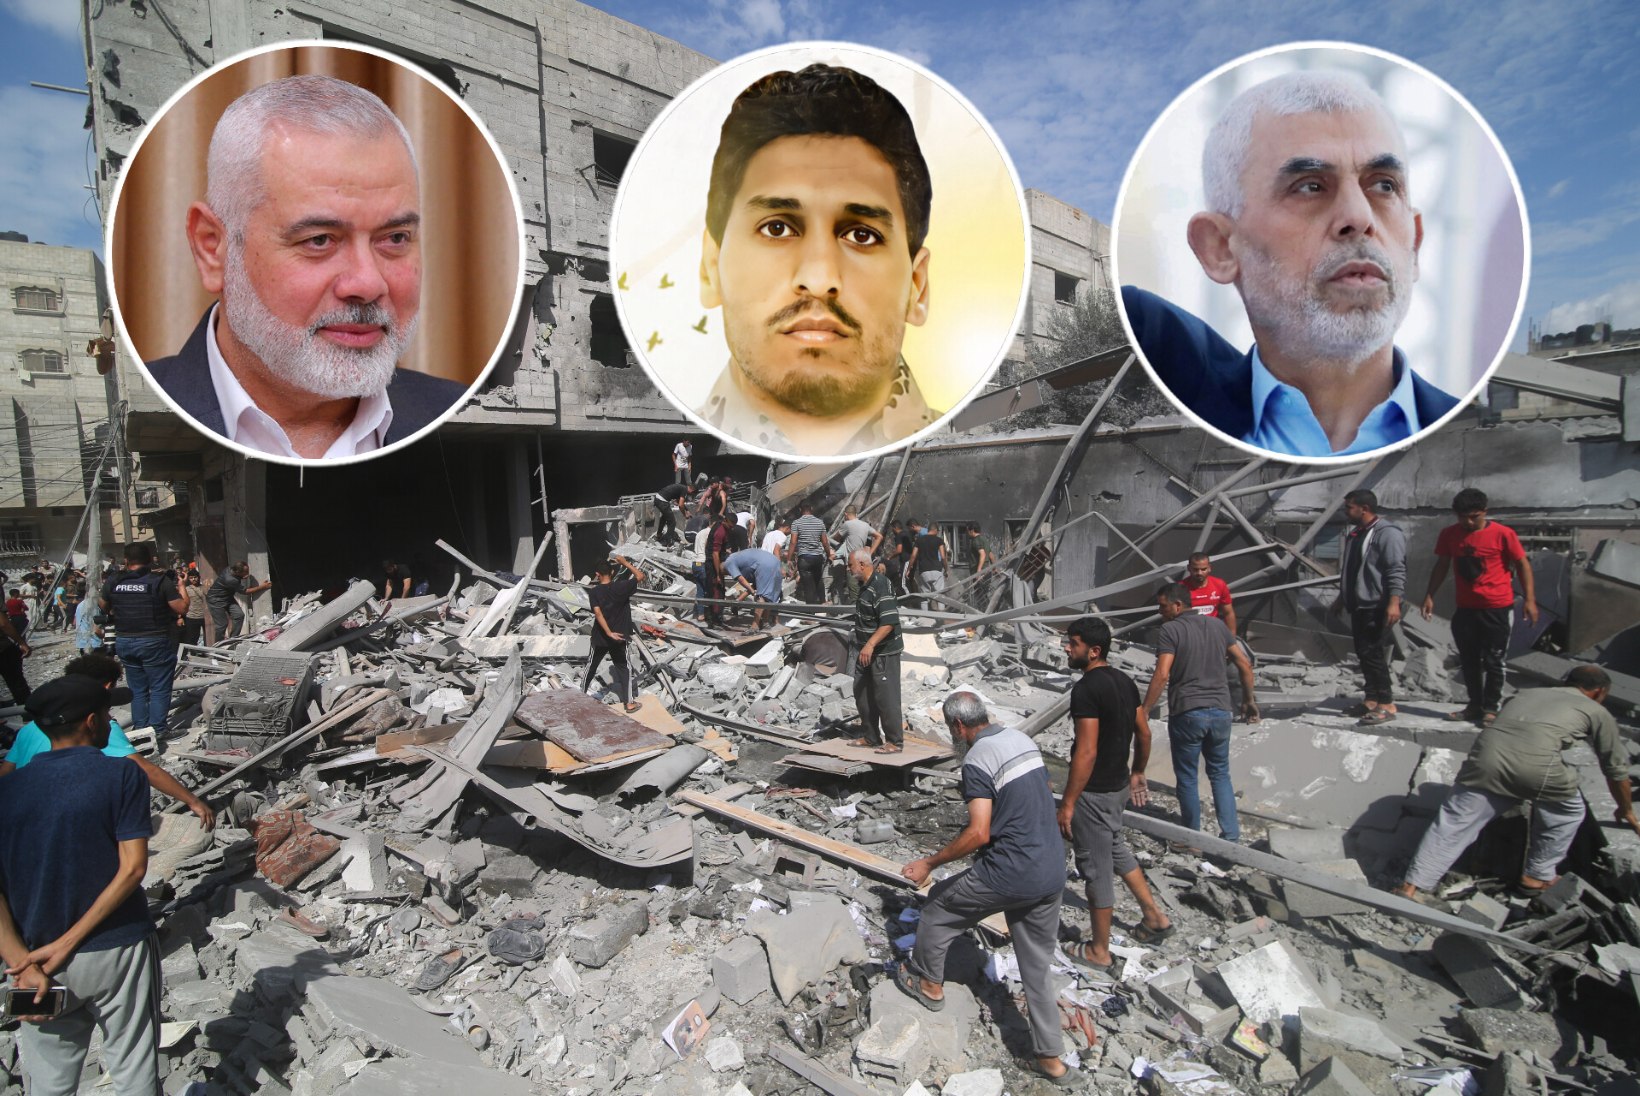 POLIITIK, VÕITLEJA JA JUHT: Hamasi tüürivad kolm ohtlikku terroristi, kelle tabamine on käinud Iisraelile üle jõu